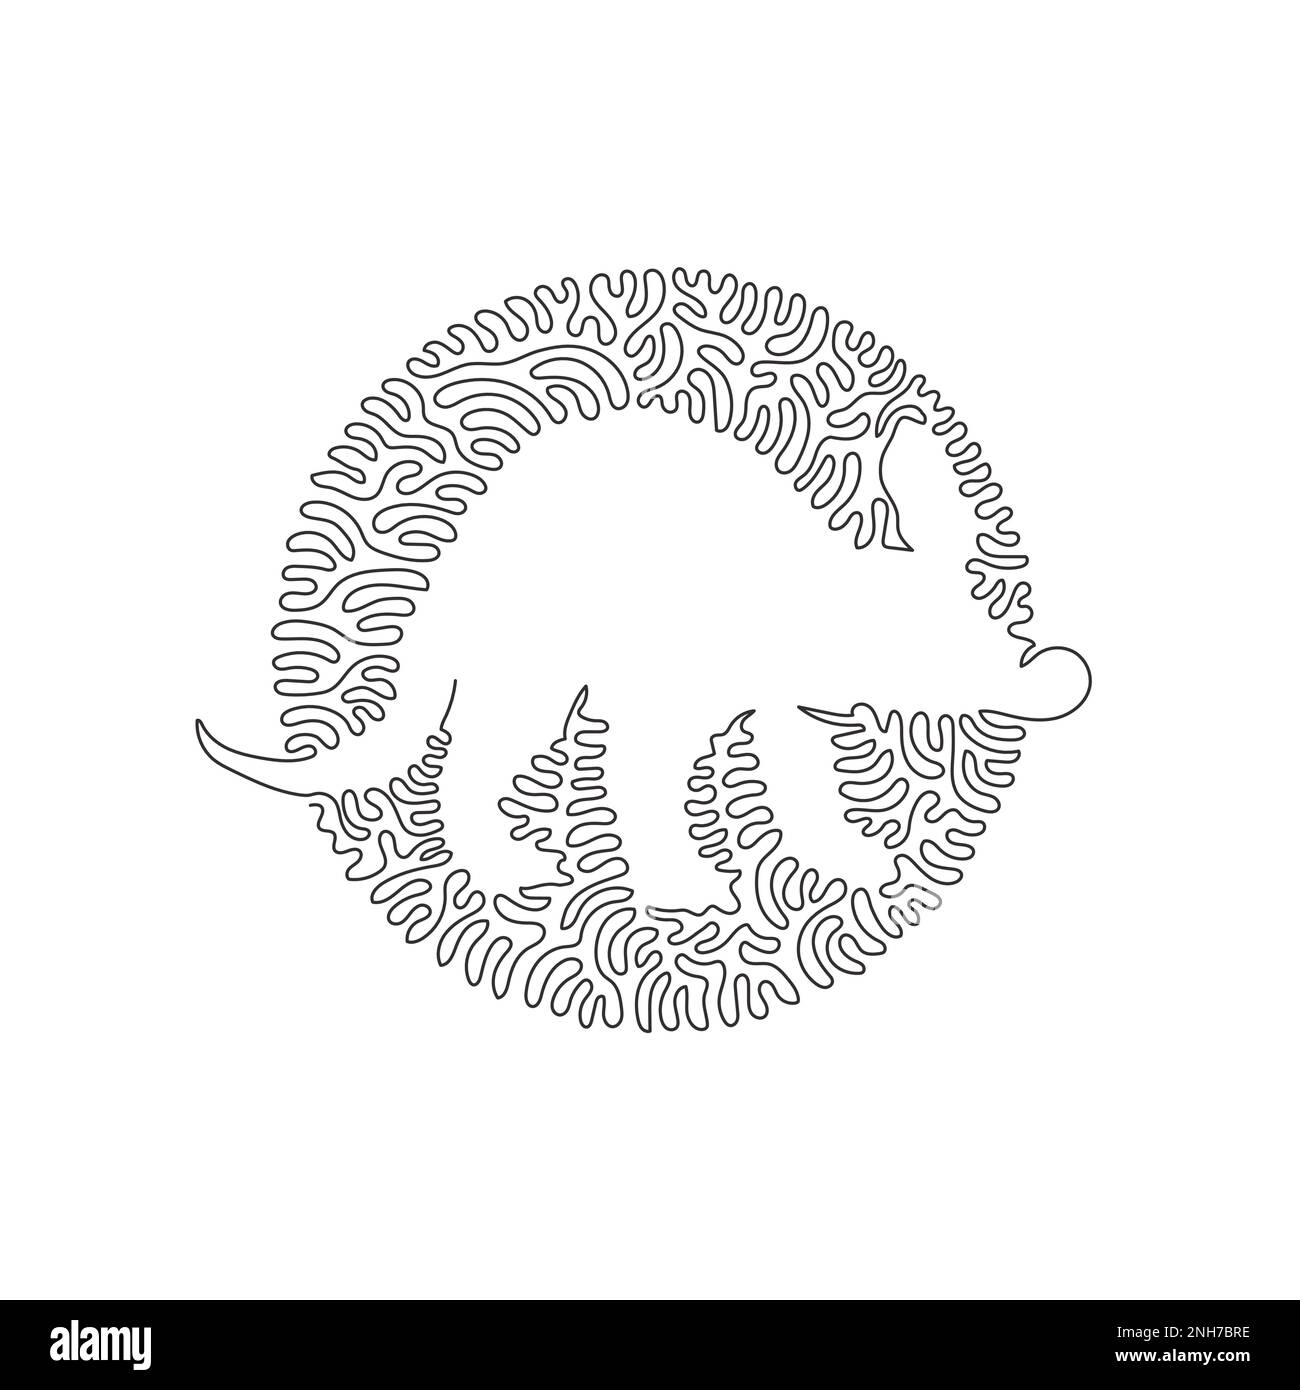 Einfache, geschwungene, einzeilige Zeichnung einer Aardvark-langen, schweinenartigen Schnauze abstrakte Kunst. Strichzeichnung von Strichen Vektordarstellung eines süßen Aardvark Stock Vektor